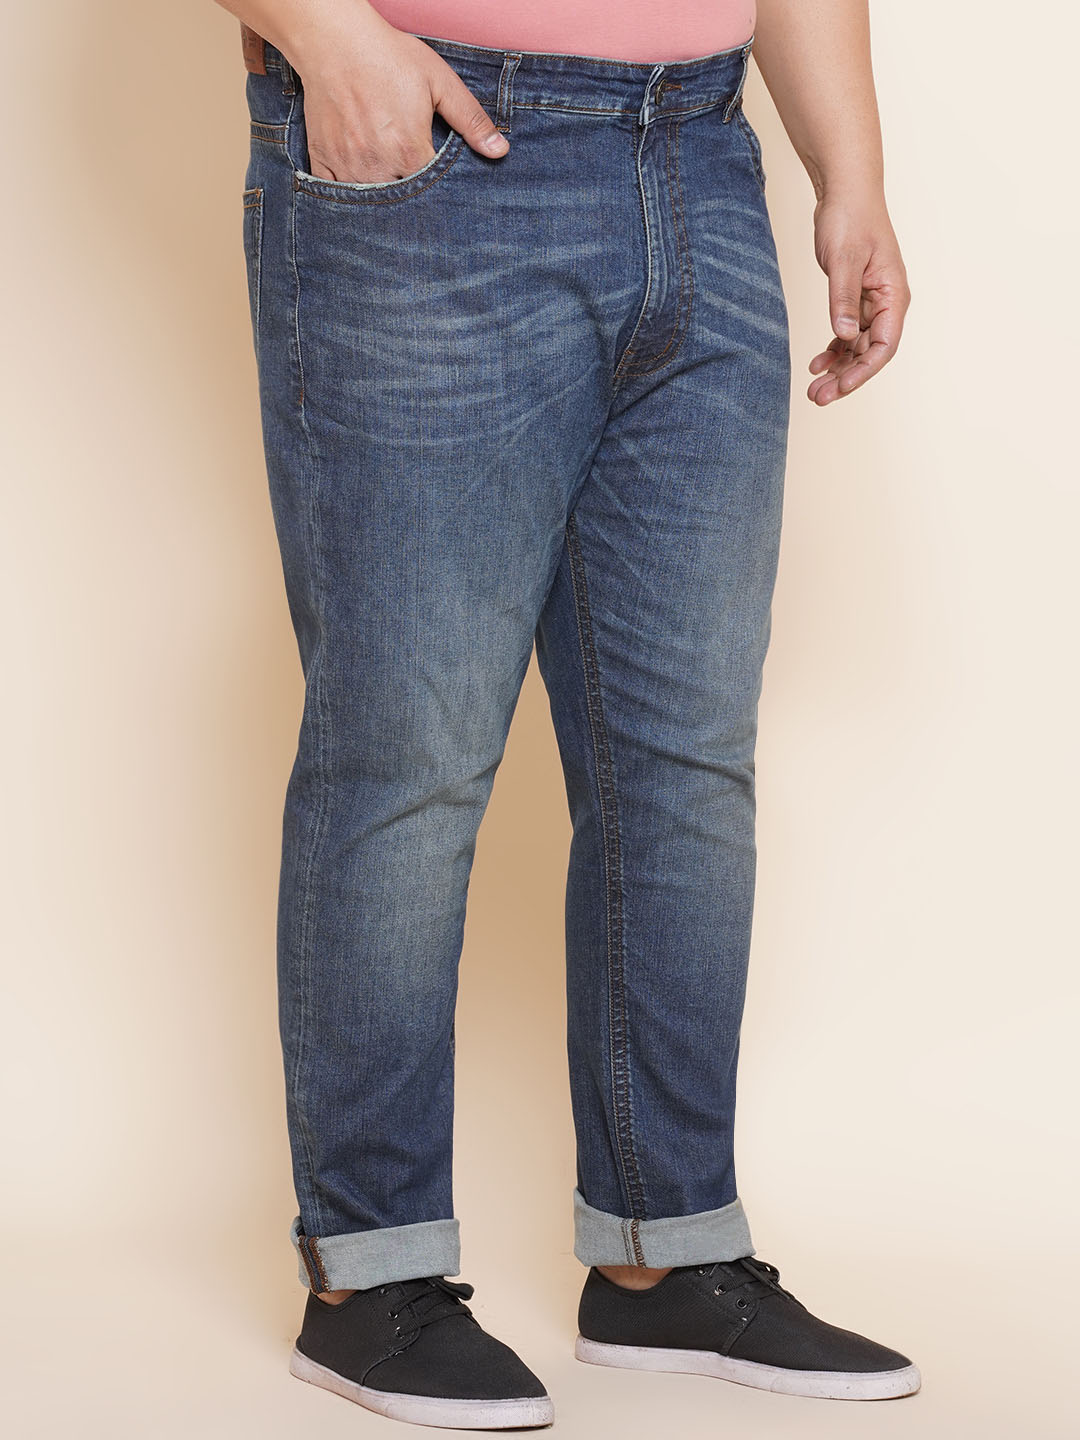 bottomwear/jeans/JPJ27019/jpj27019-3.jpg